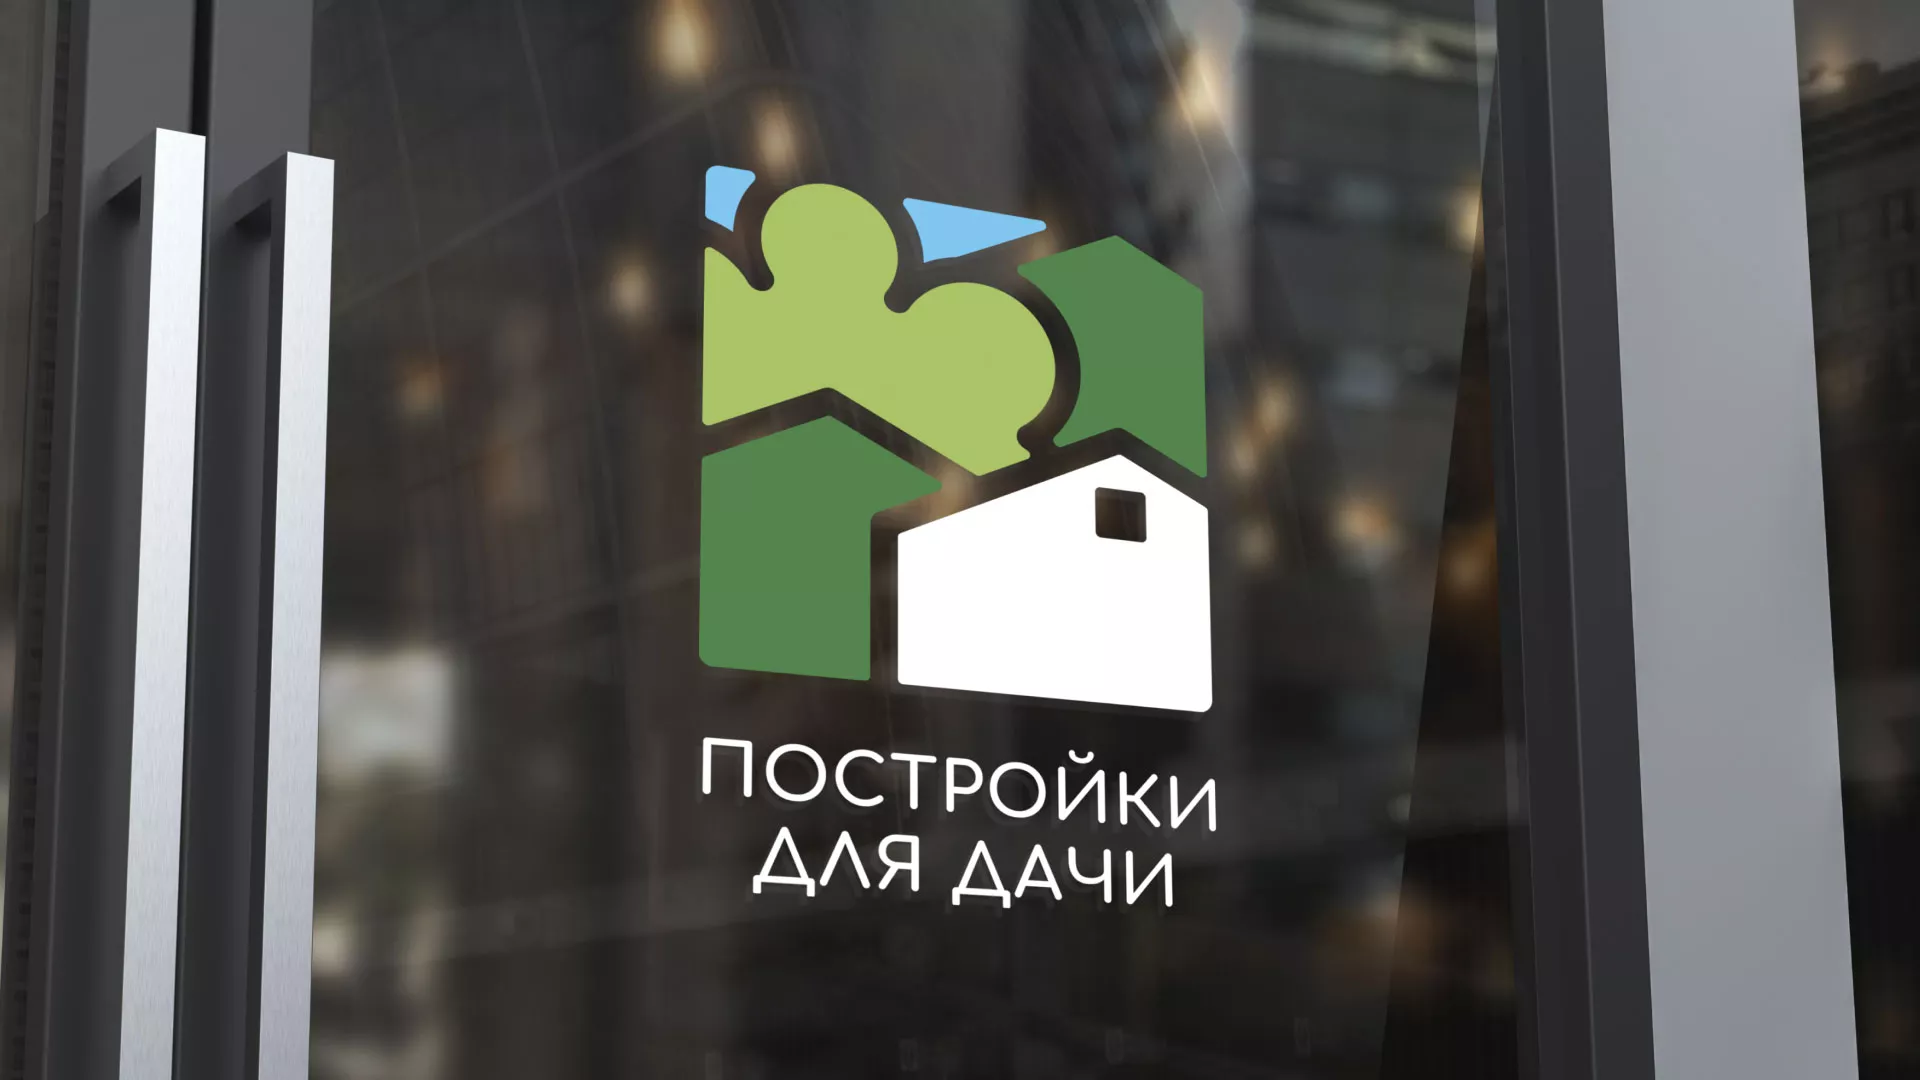 Разработка логотипа в Усть-Лабинске для компании «Постройки для дачи»